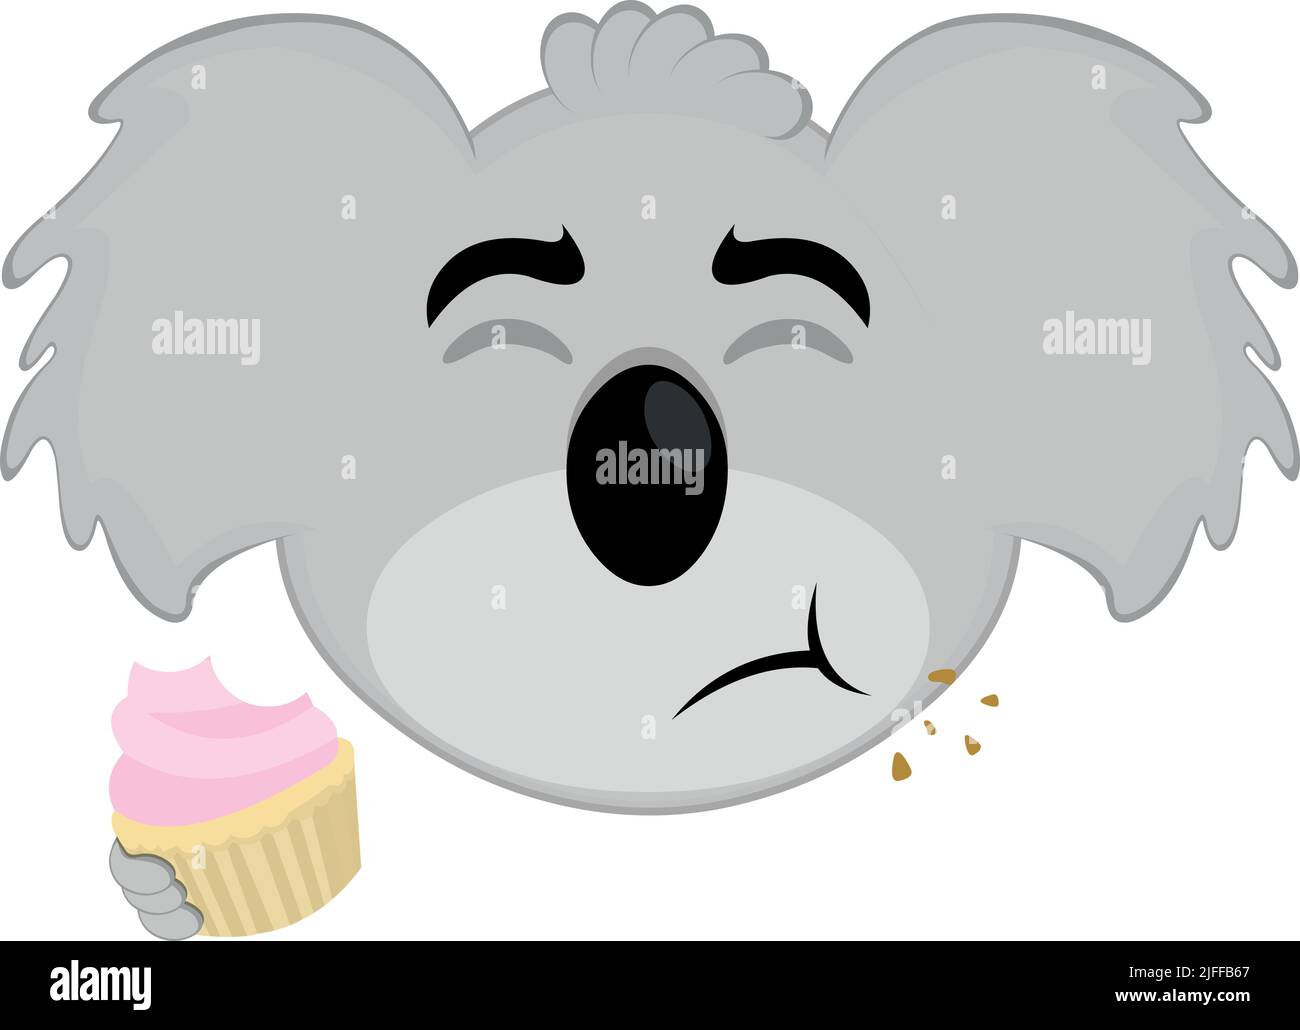 Illustration vectorielle du visage d'un dessin animé koala mangeant un cupcake ou un muffin Illustration de Vecteur